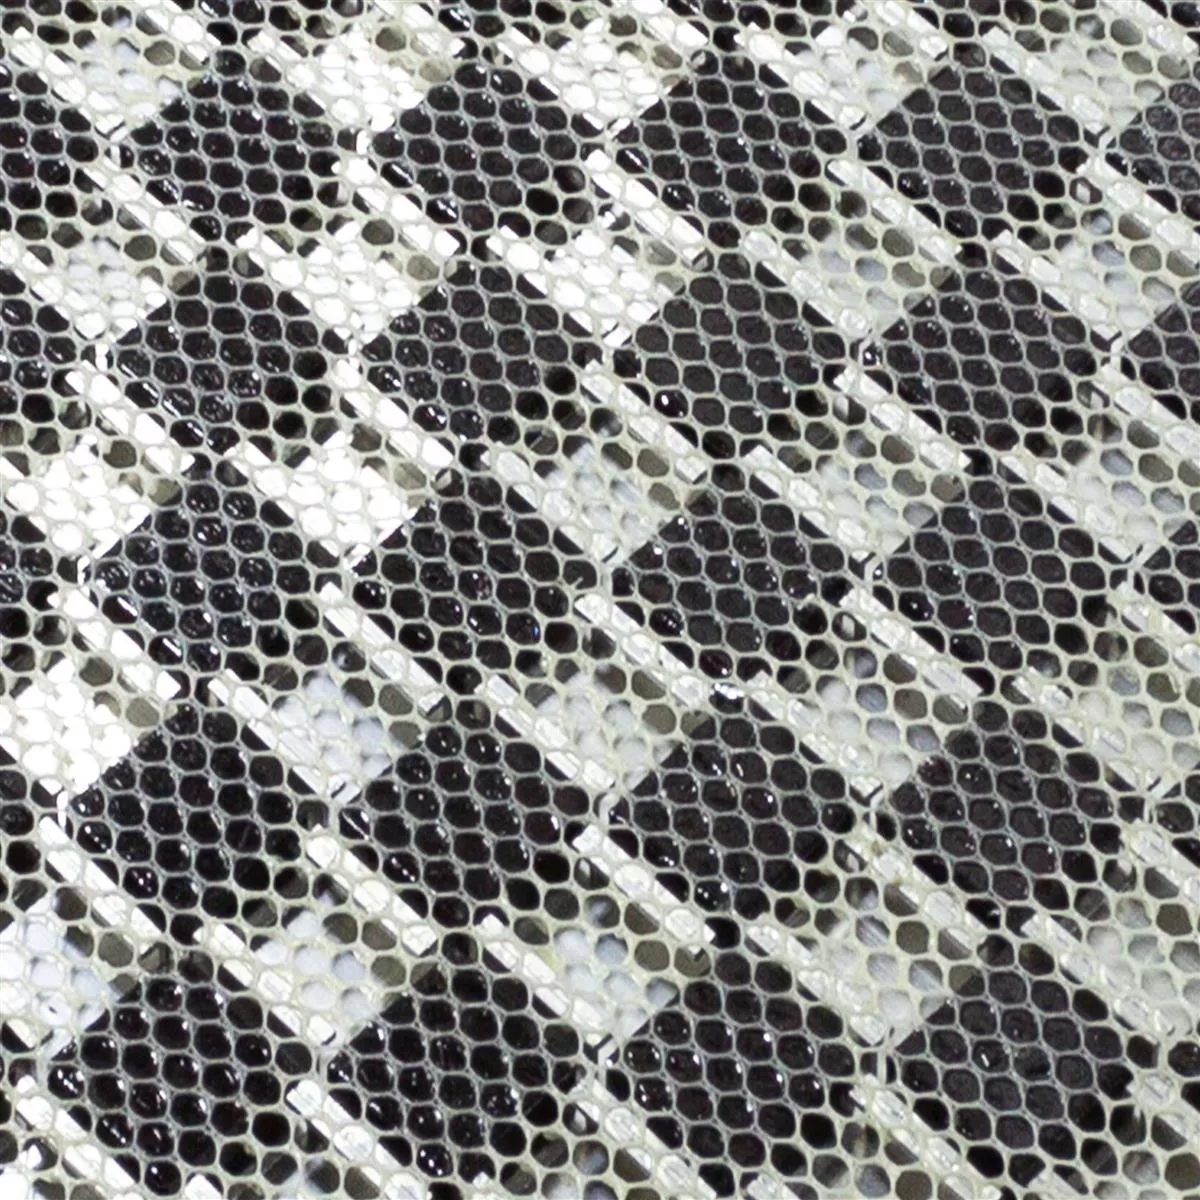 Muster von Glas Aluminium Mosaik Fliesen Eldorien Silber-Grau